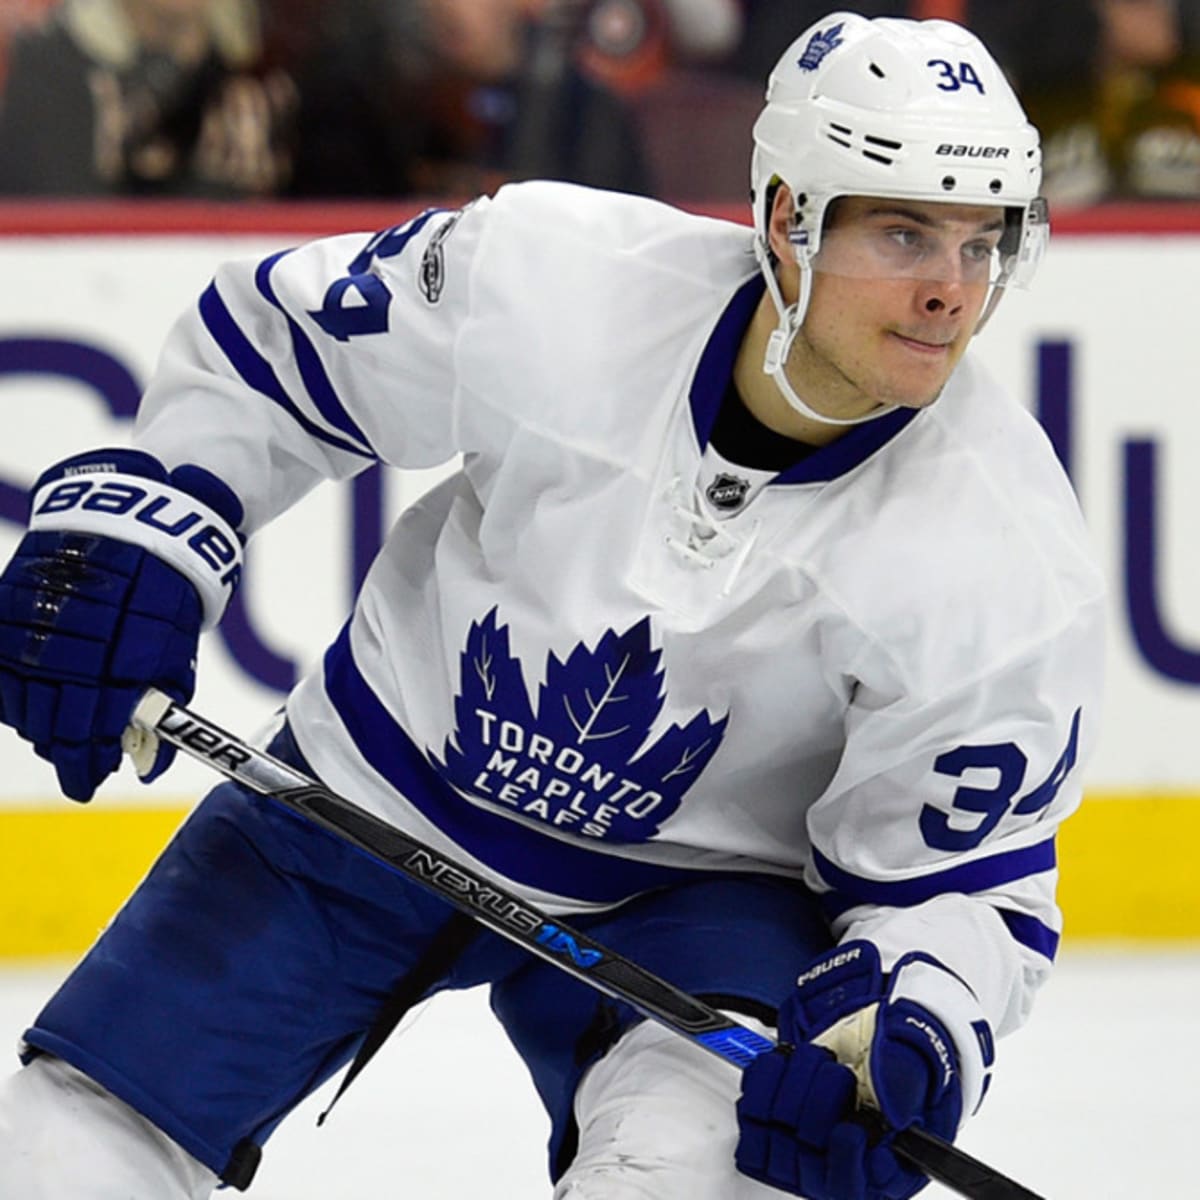 Toronto Maple Leafs: Auston Matthews Hasn't Lost His Scoring Touch